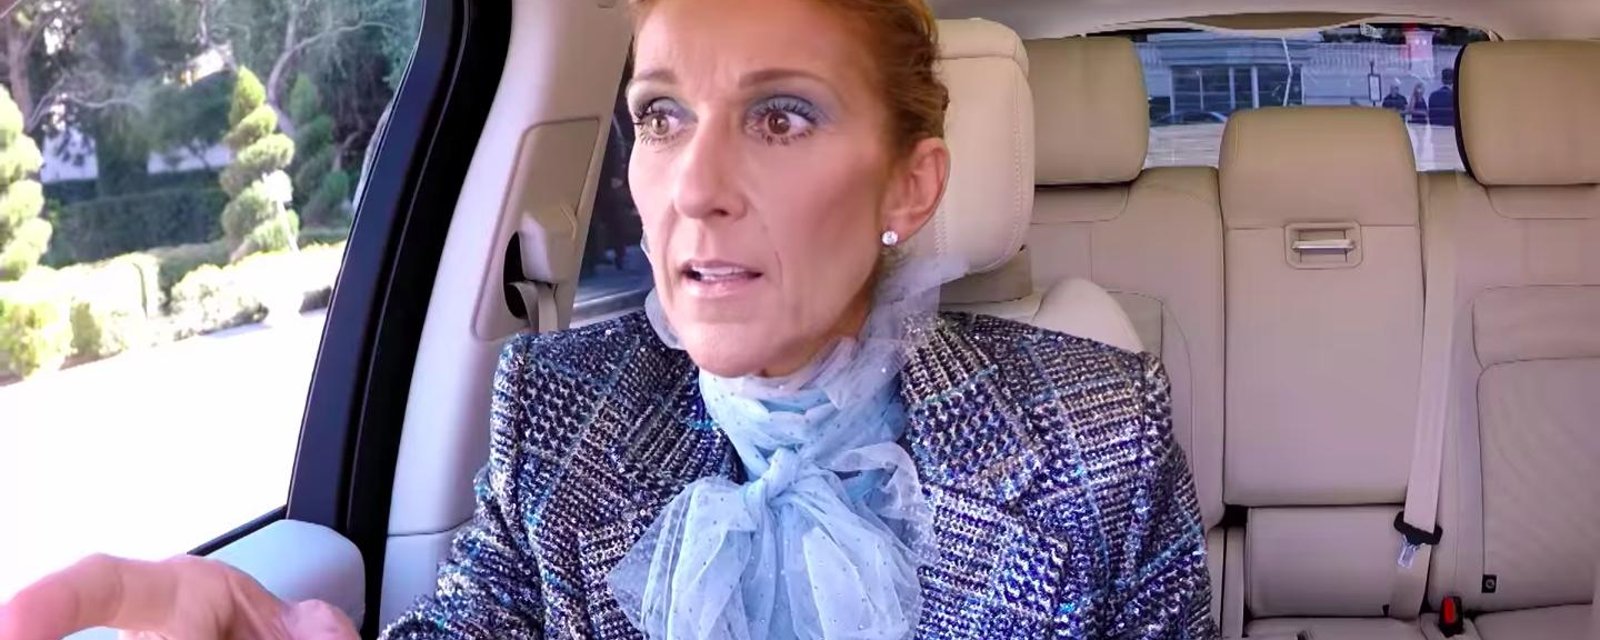 Céline Dion est la cible de nombreux commentaires négatifs suite à son Carpool Karaoke